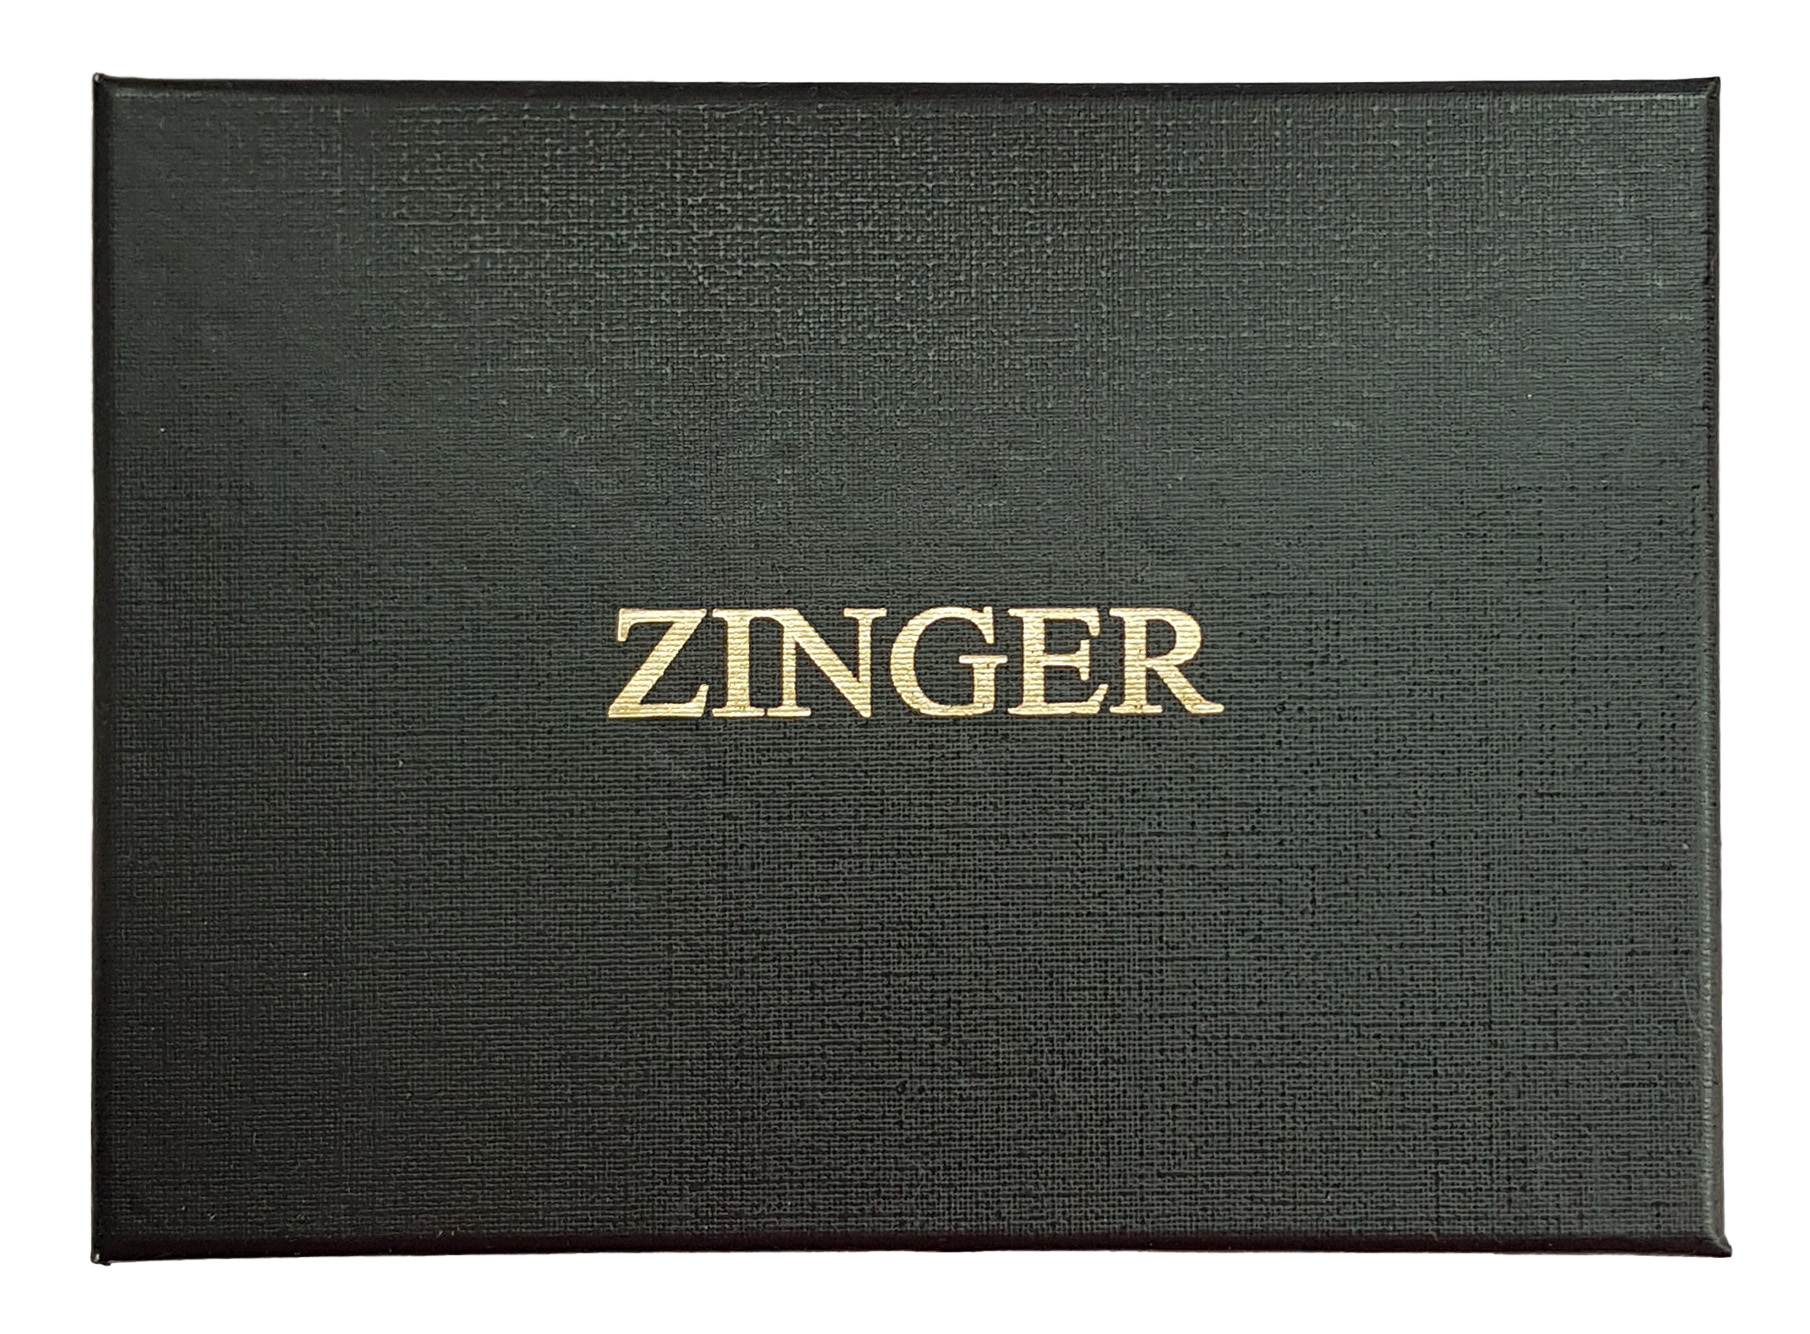 Маникюрный набор Zinger Premium-качества серебристый 7 предметов + пинцет маникюрный набор premium качества zinger msfe 701 3 sm 6 предметов пинцет темно серый